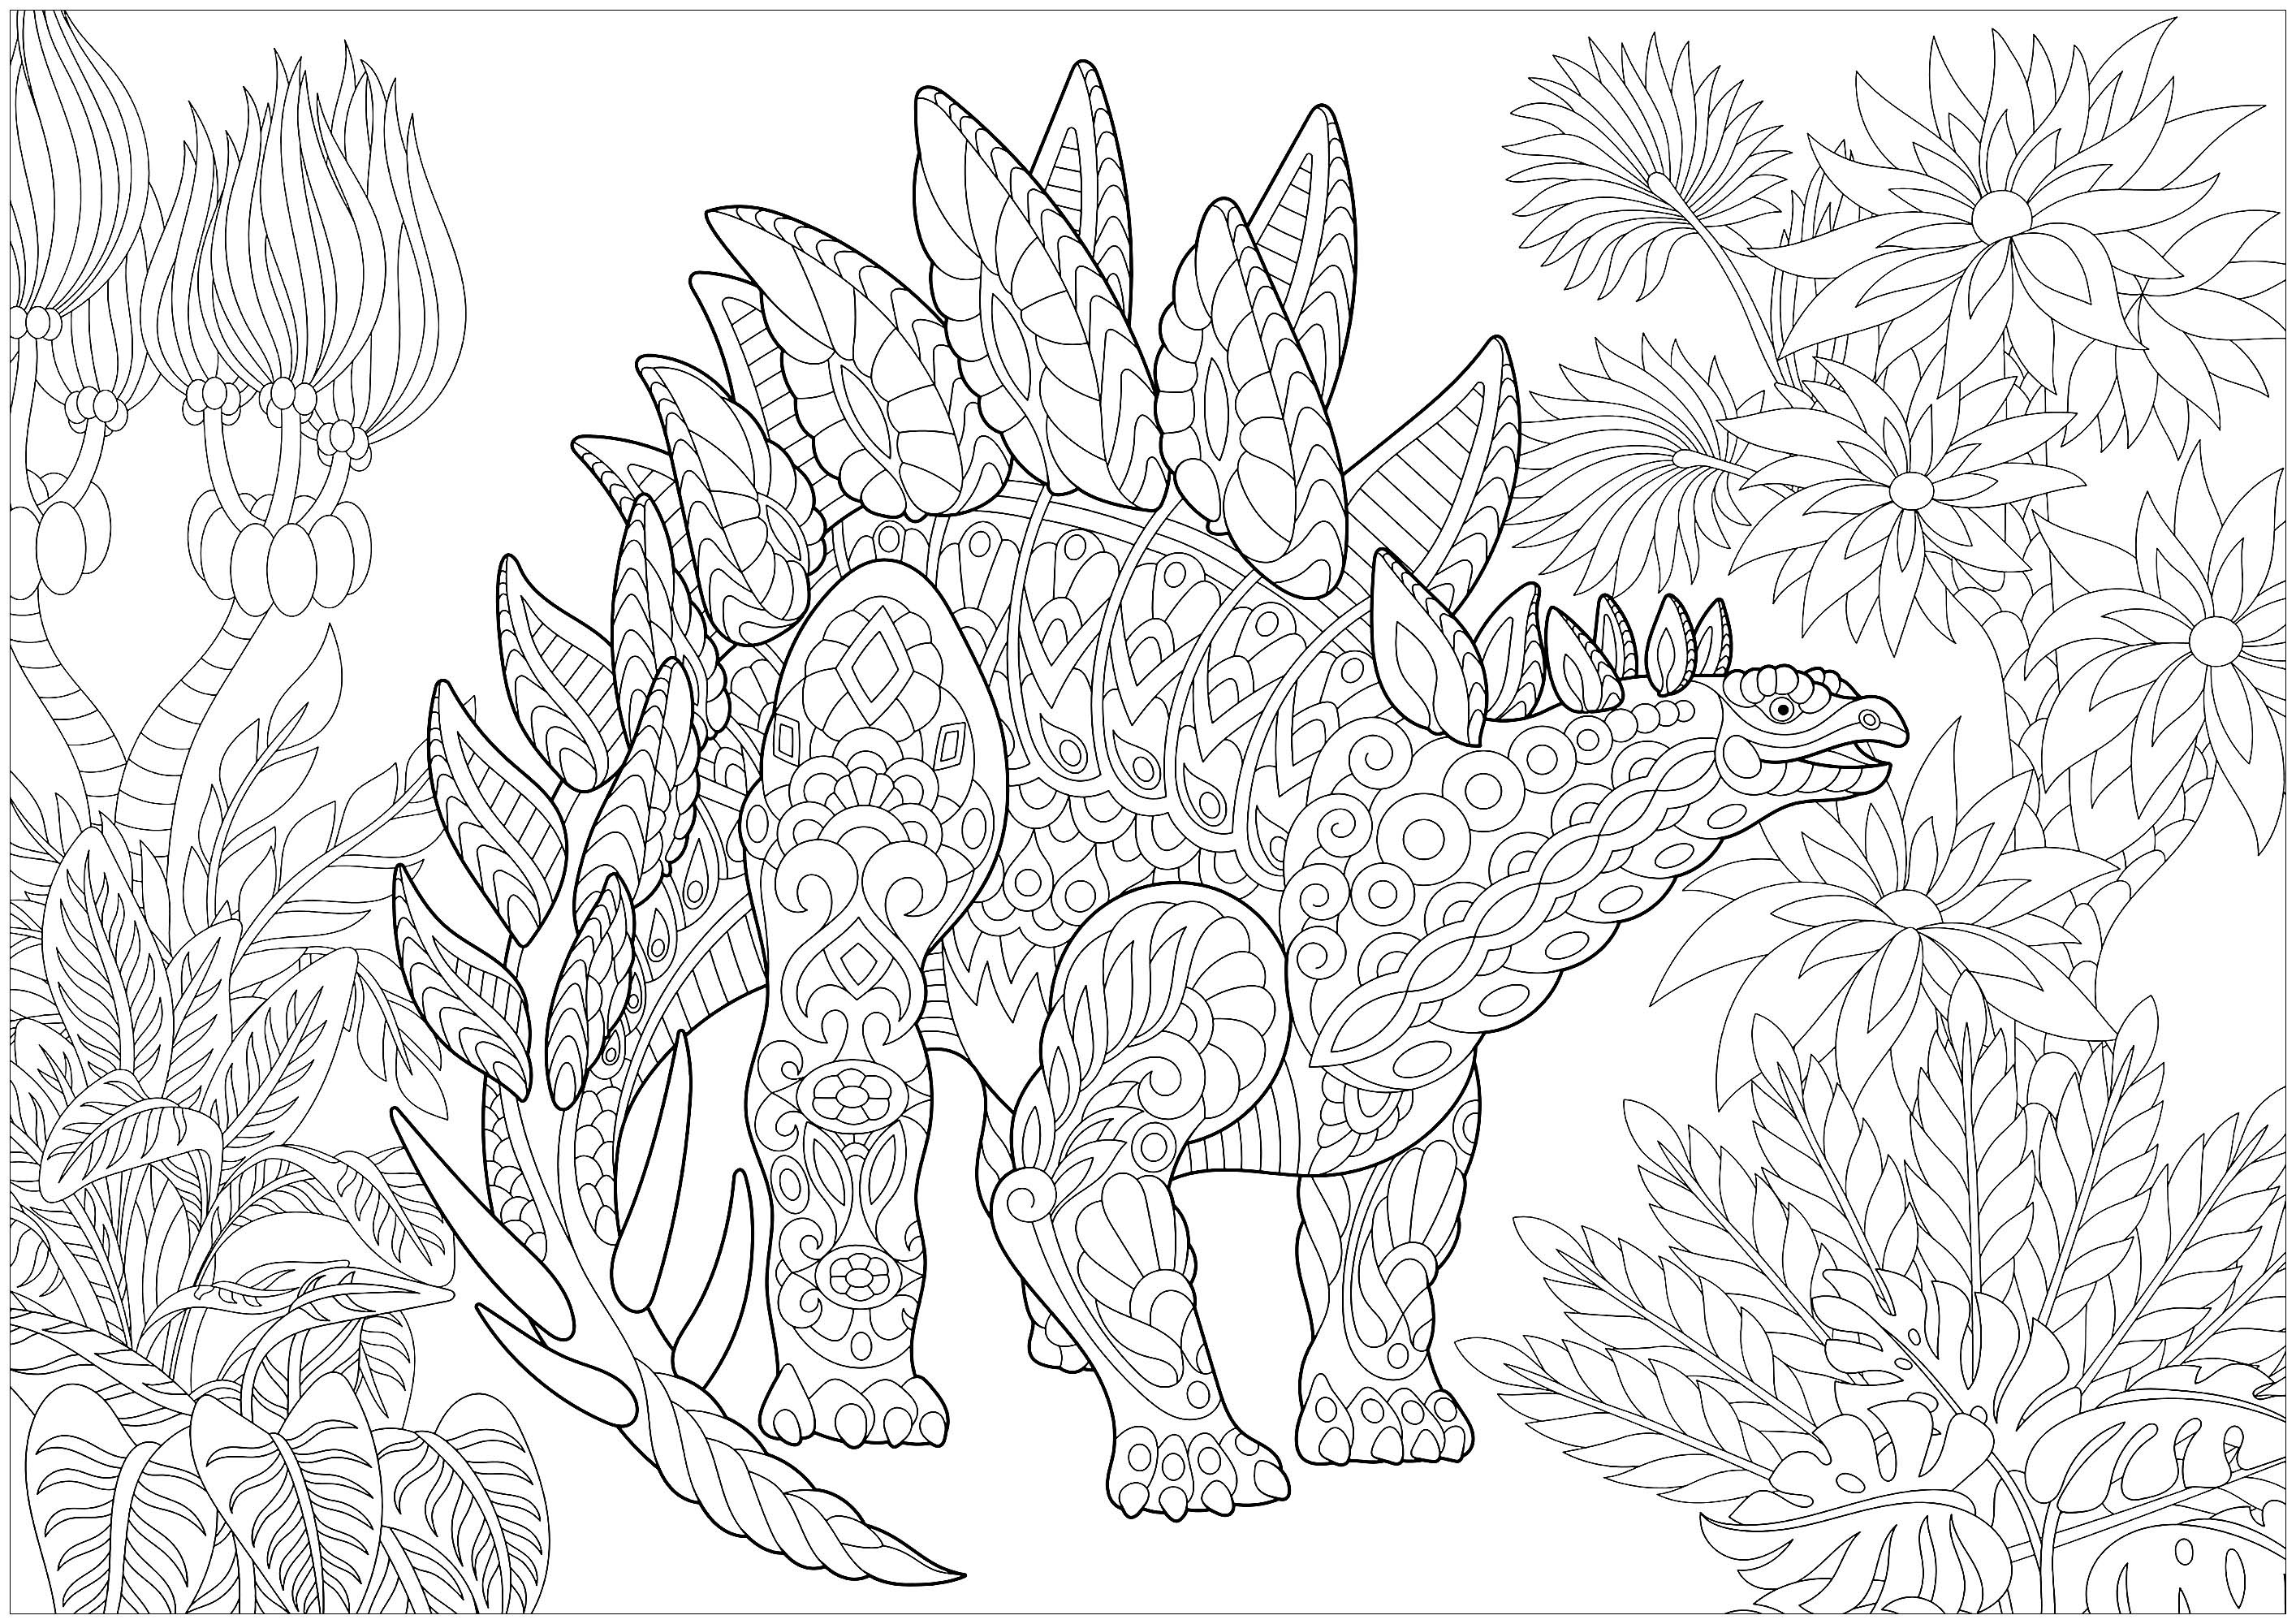 Stégosaure / Stegosaurus  Dinosaures  Coloriages difficiles pour adultes